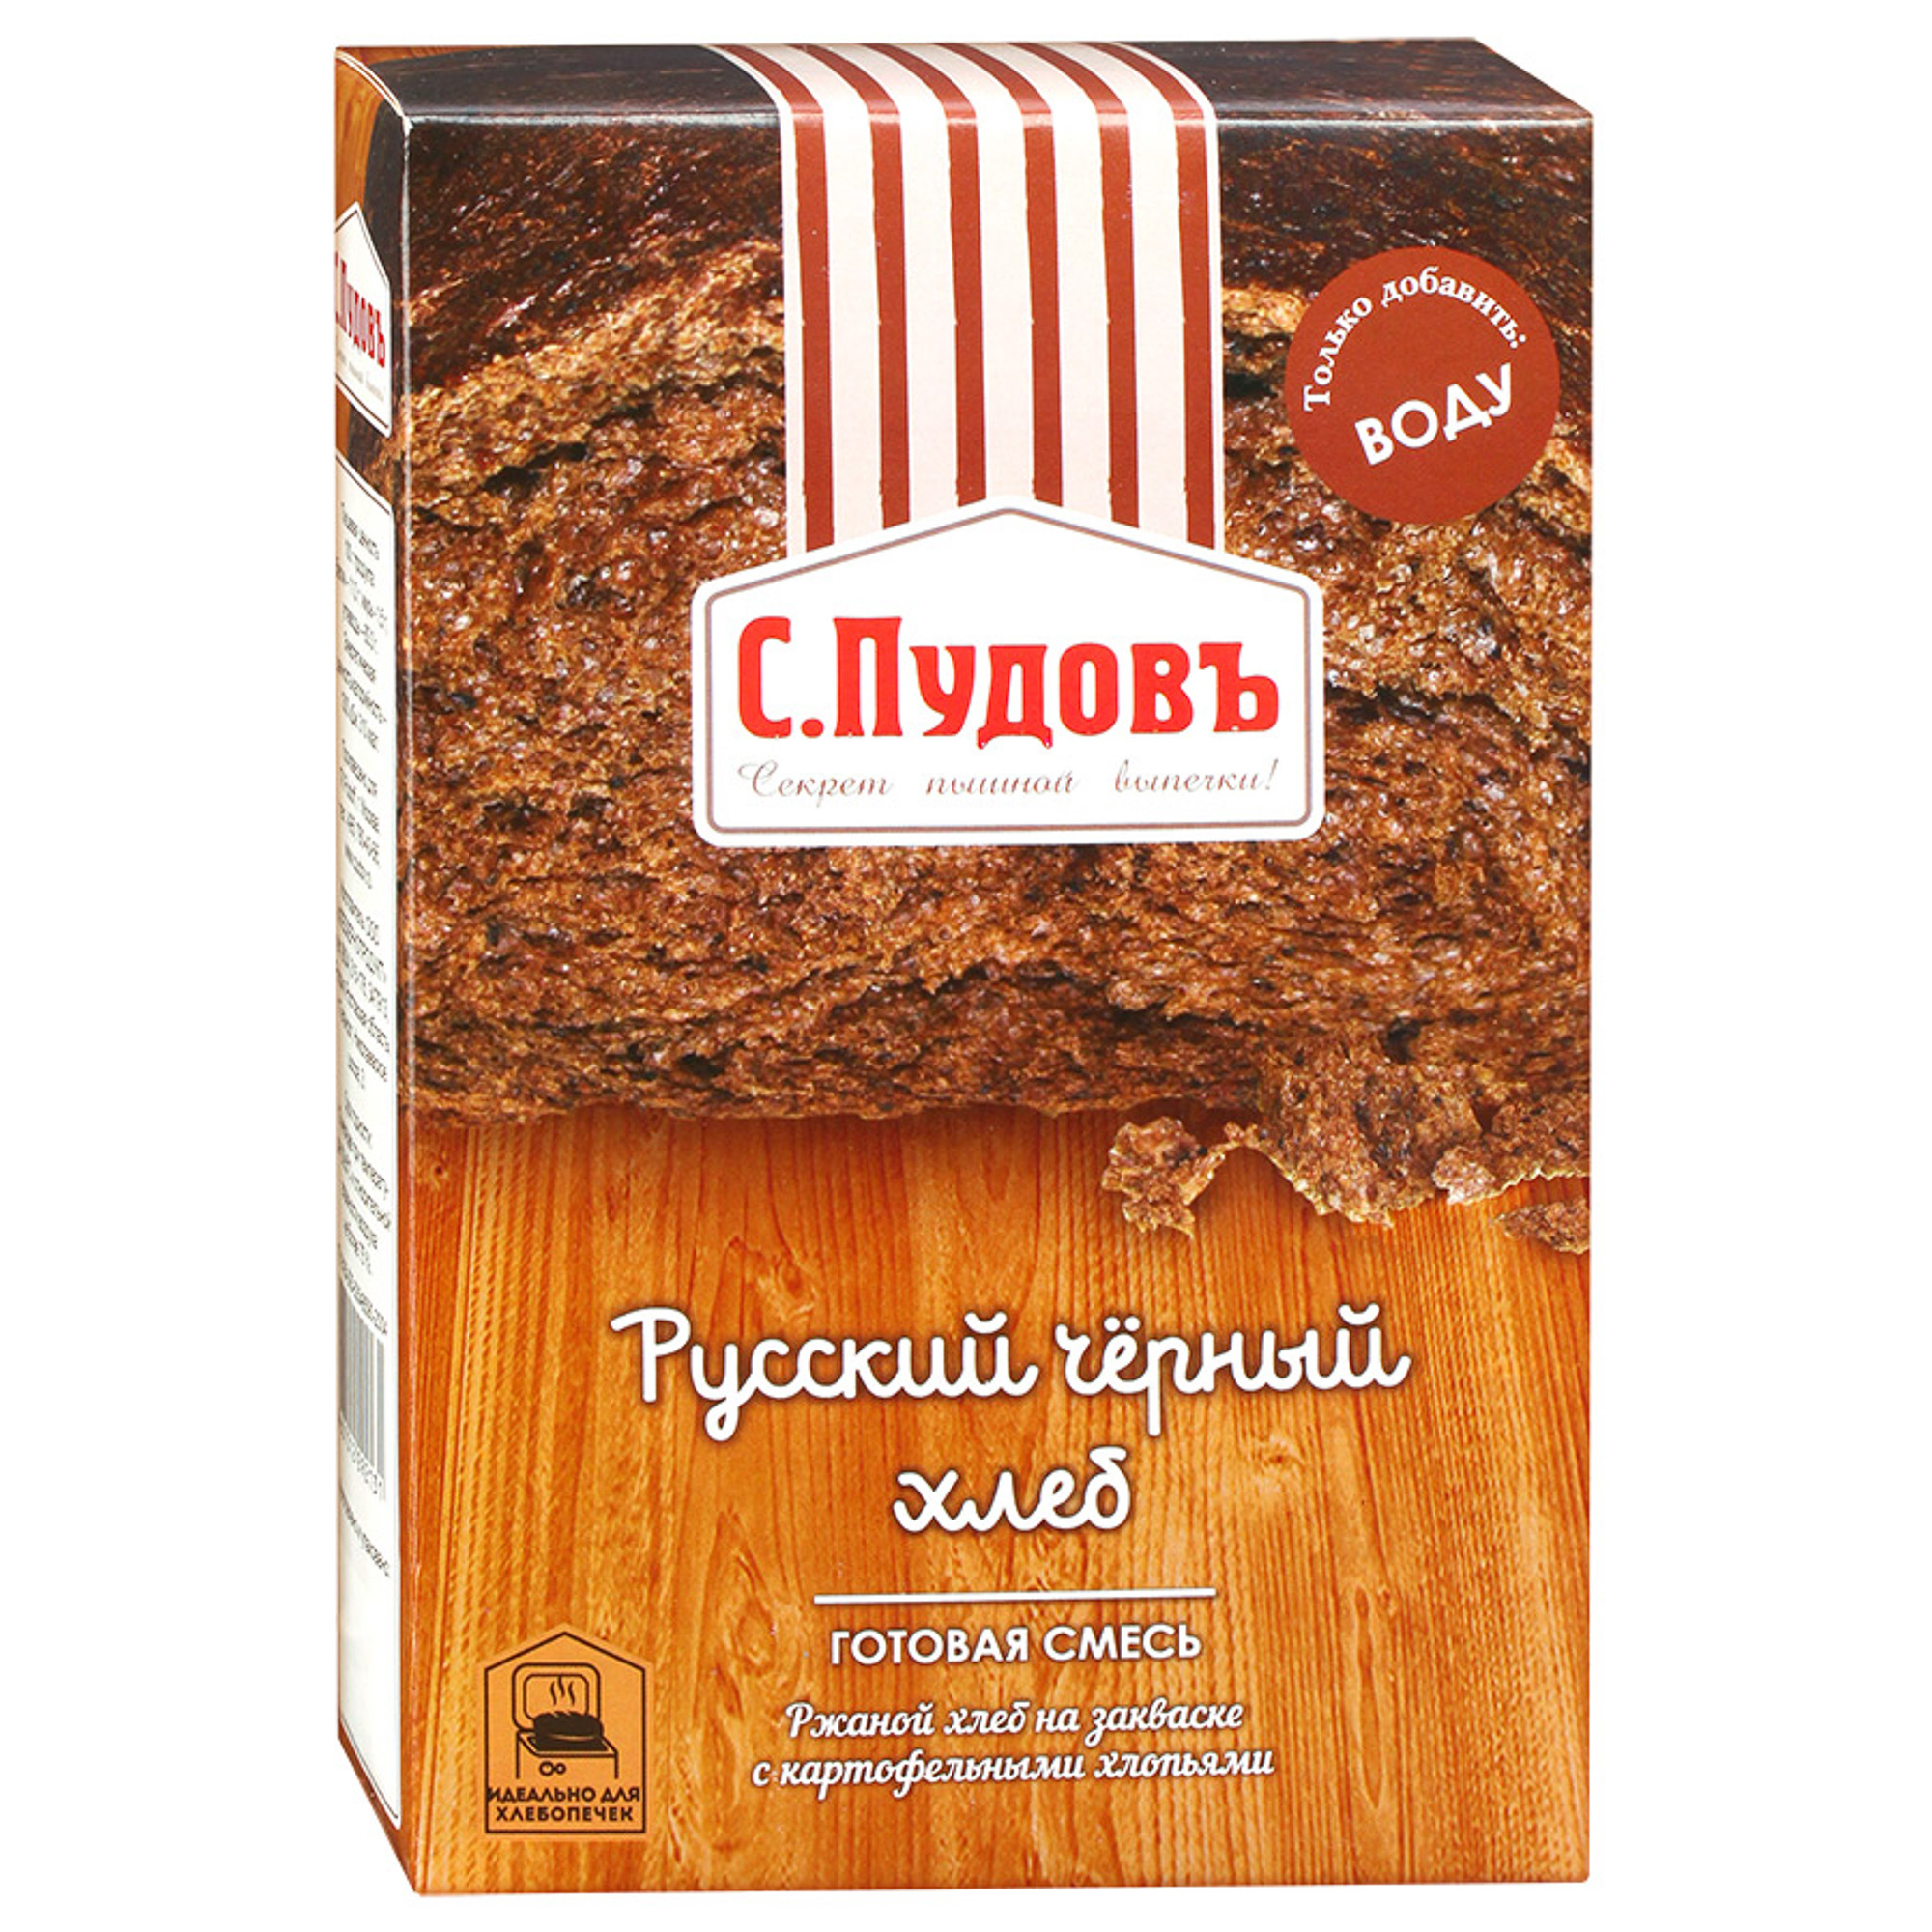 Хлебная смесь С.Пудовъ Русский черный хлеб 500 г мука пшеничная с пудовъ хлебопекарная в с 1 кг